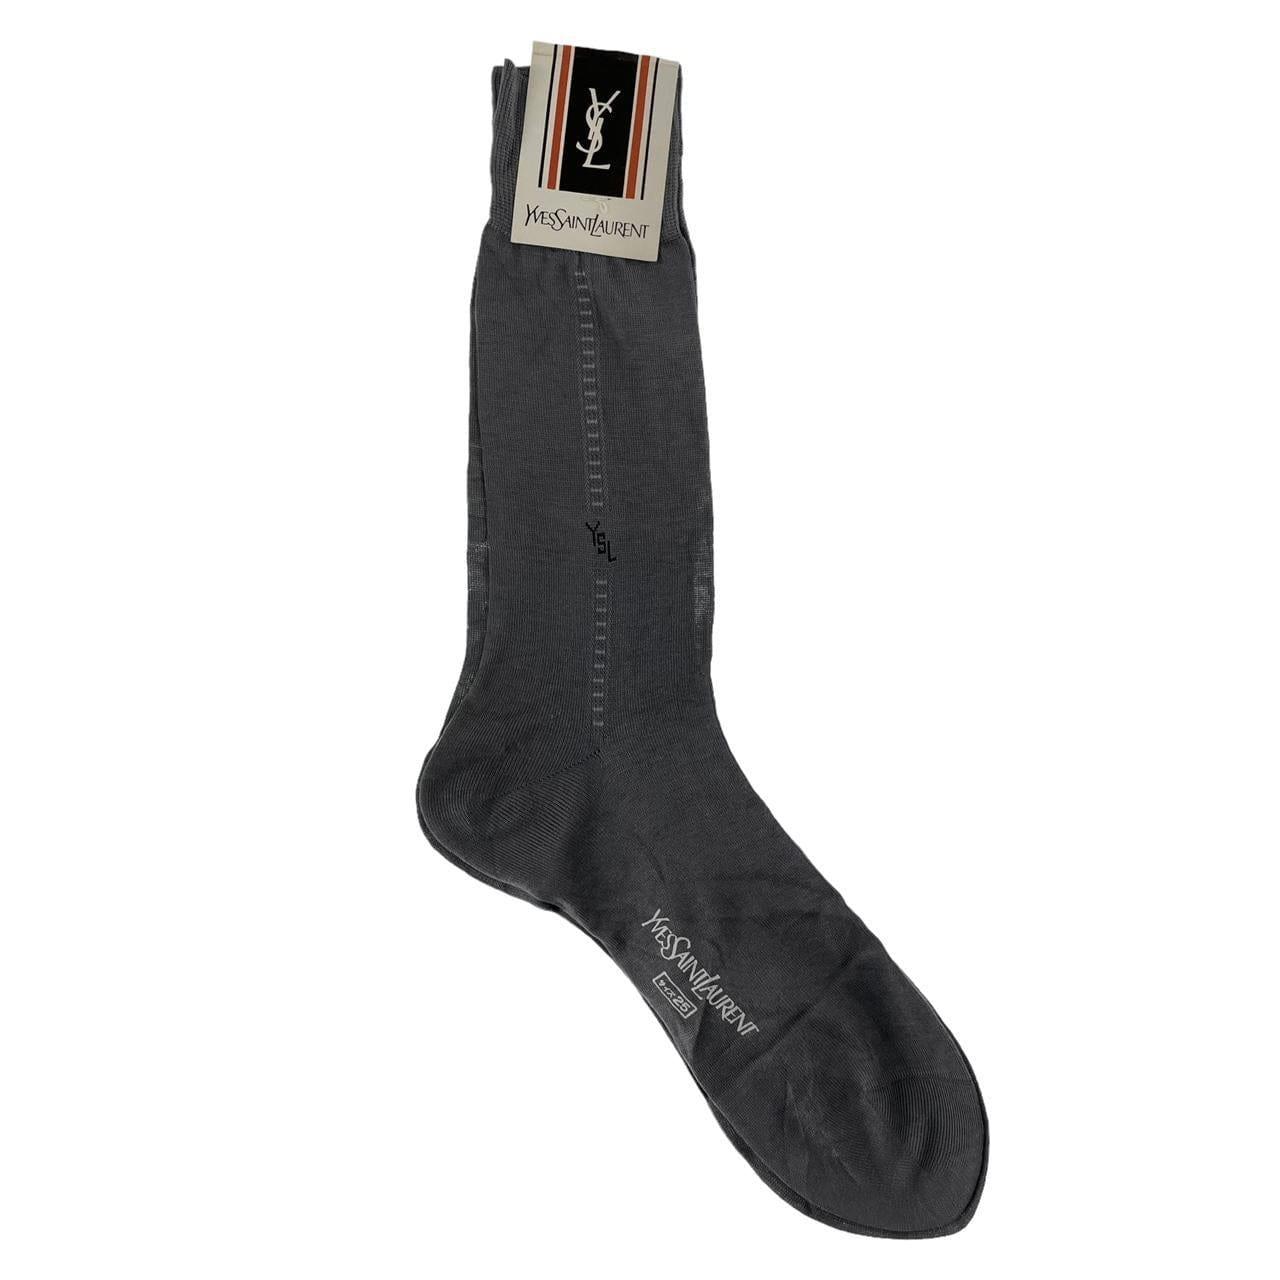 Vintage YSL Yves Saint Laurent pair of socks - Known Source